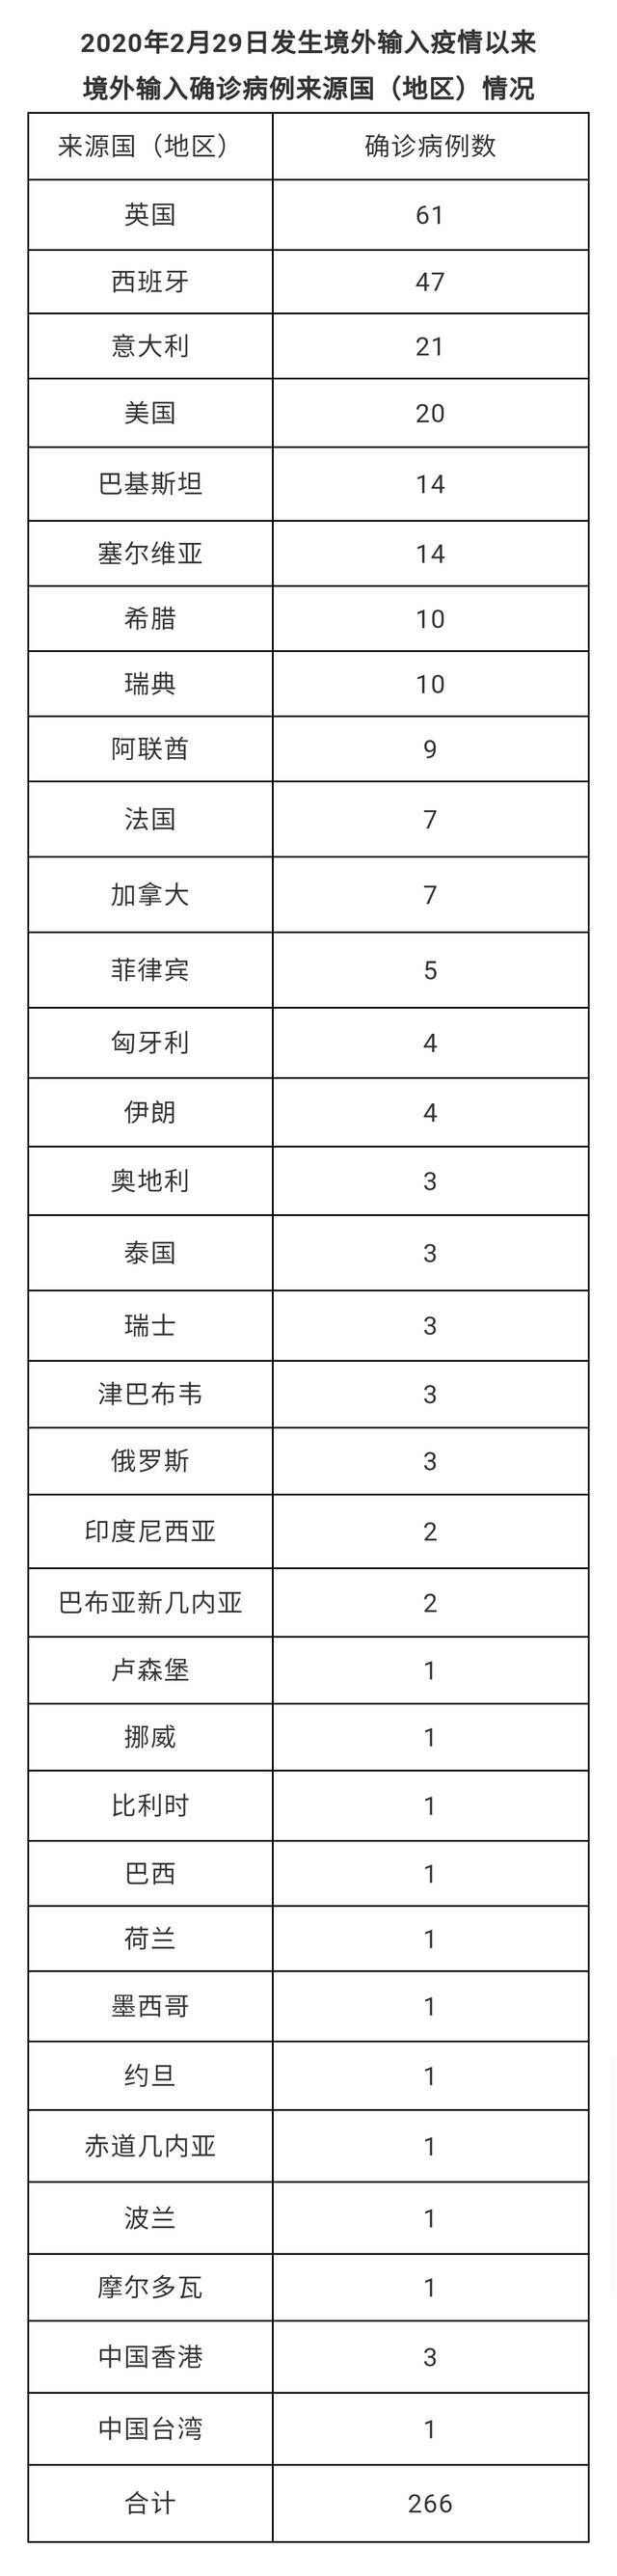 北京8月13日无新增新冠肺炎确诊病例 新增1例境外输入无症状感染者 治愈出院1例